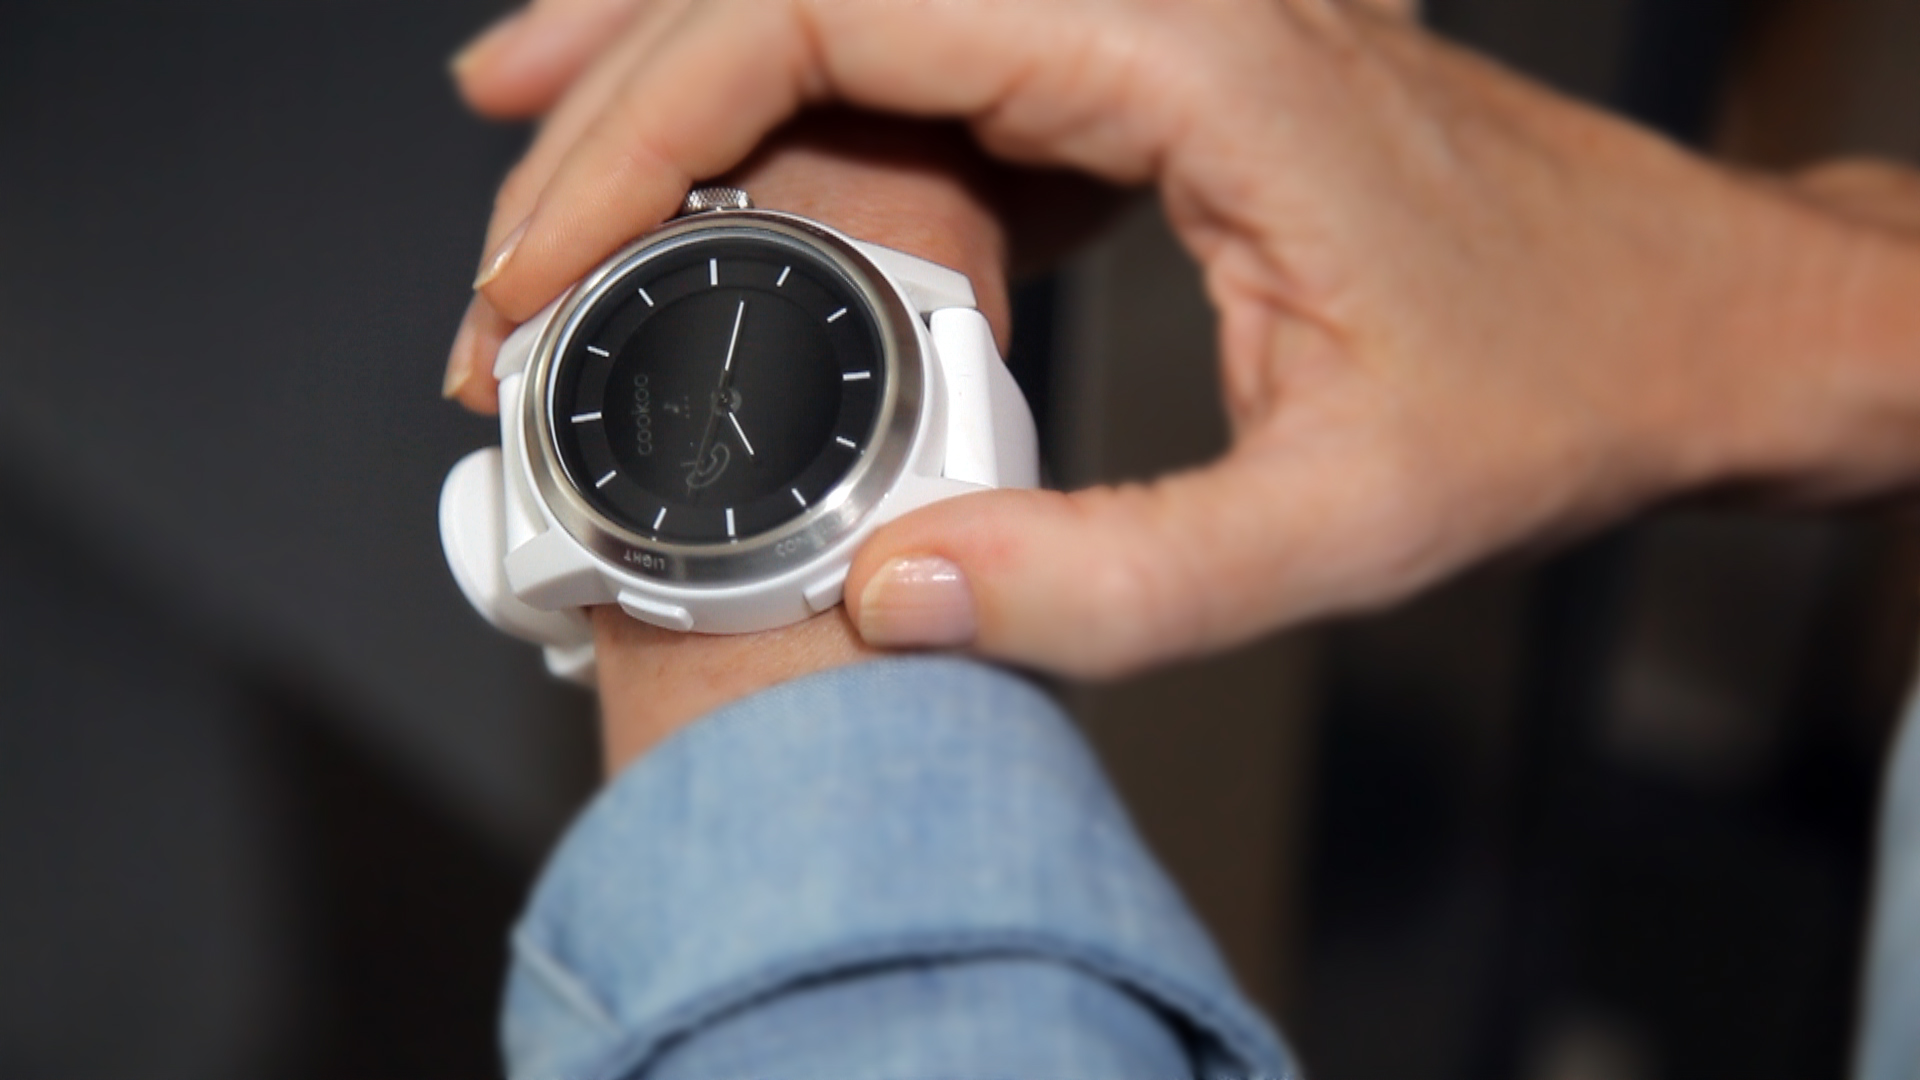 تحت الإختبار: ساعة Cookoo Watch، ساعة متزامنة مع الآي فون و أندرويد 4